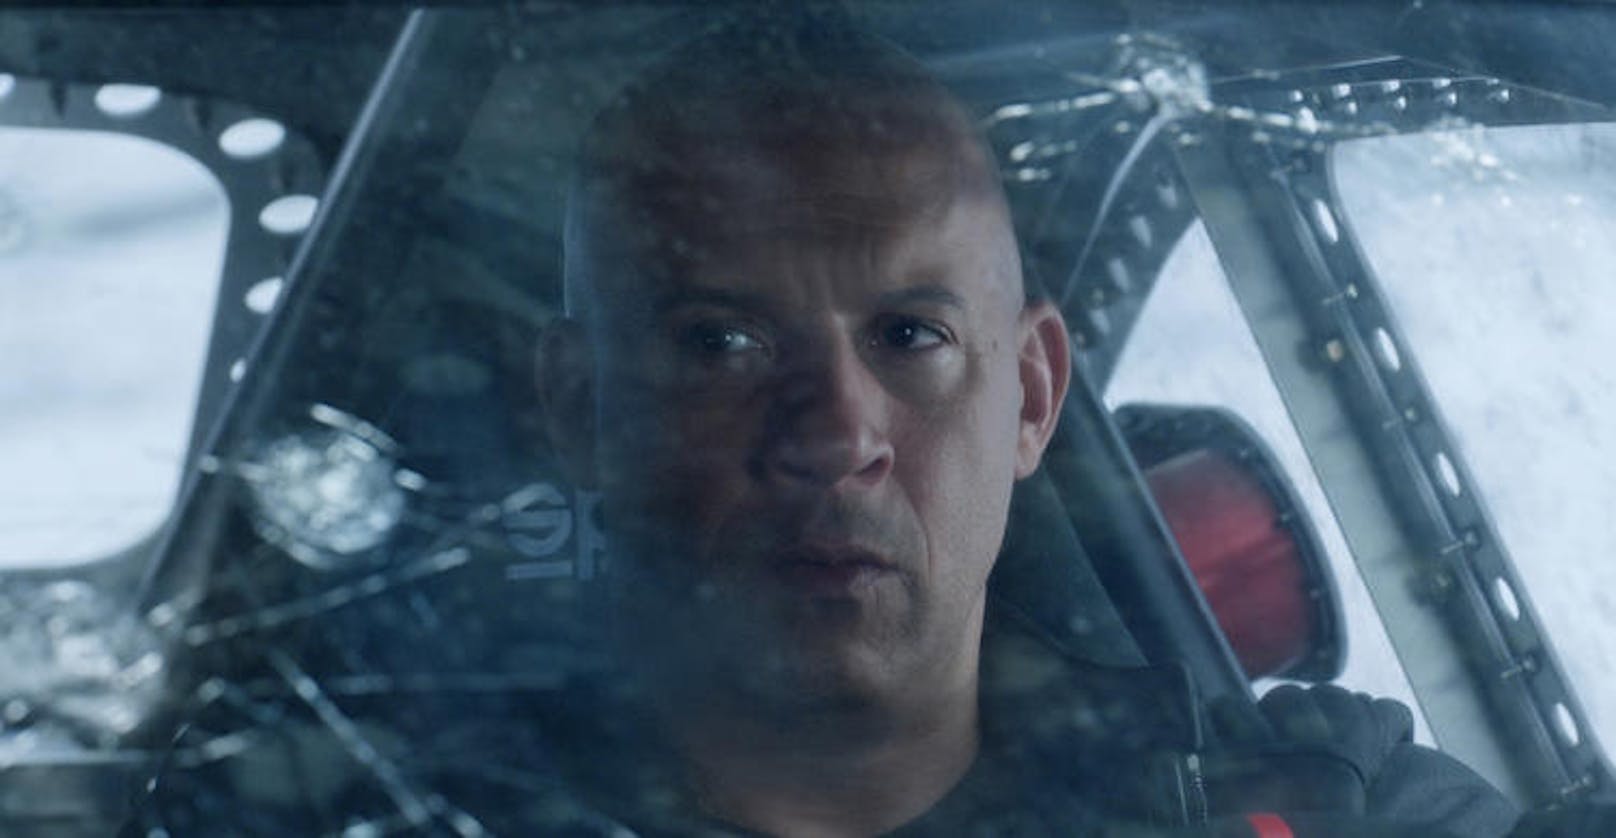 Vin Diesel in "Fast & Furious 8"